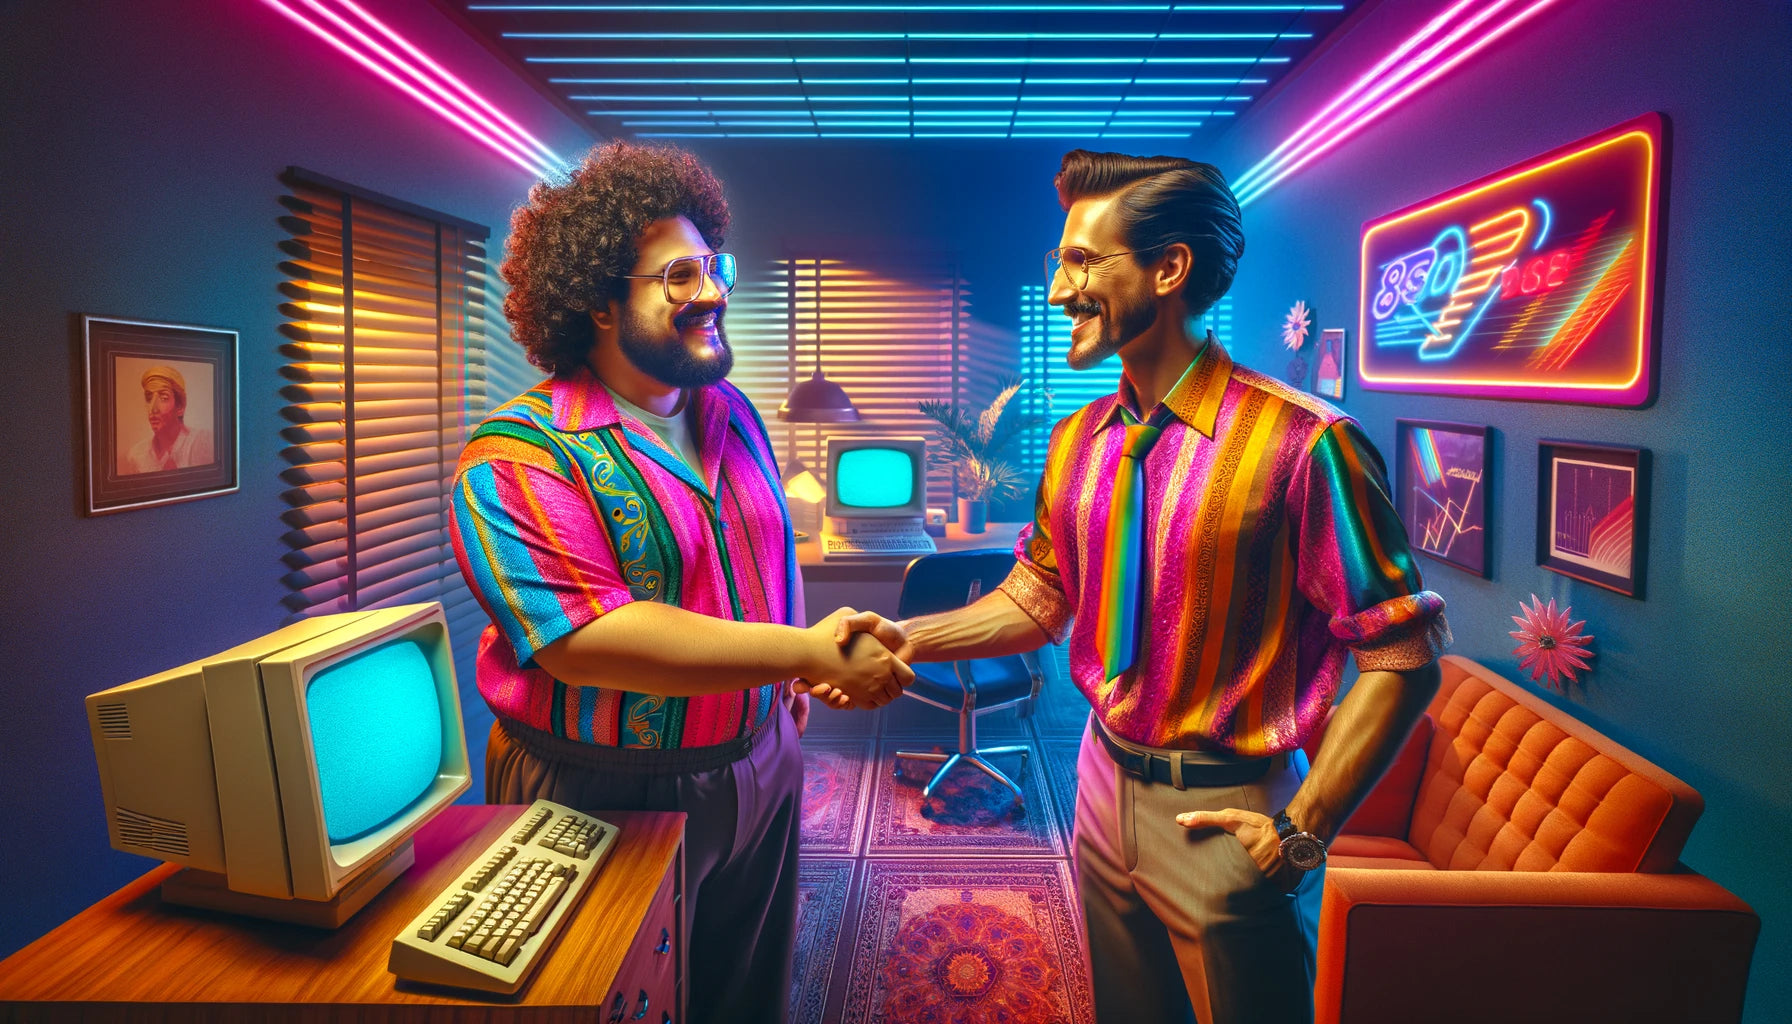 Conto Erótico Dando pro Professor. Imagem criada por IA de dois homens vestindo camisas social se cumprimentando.